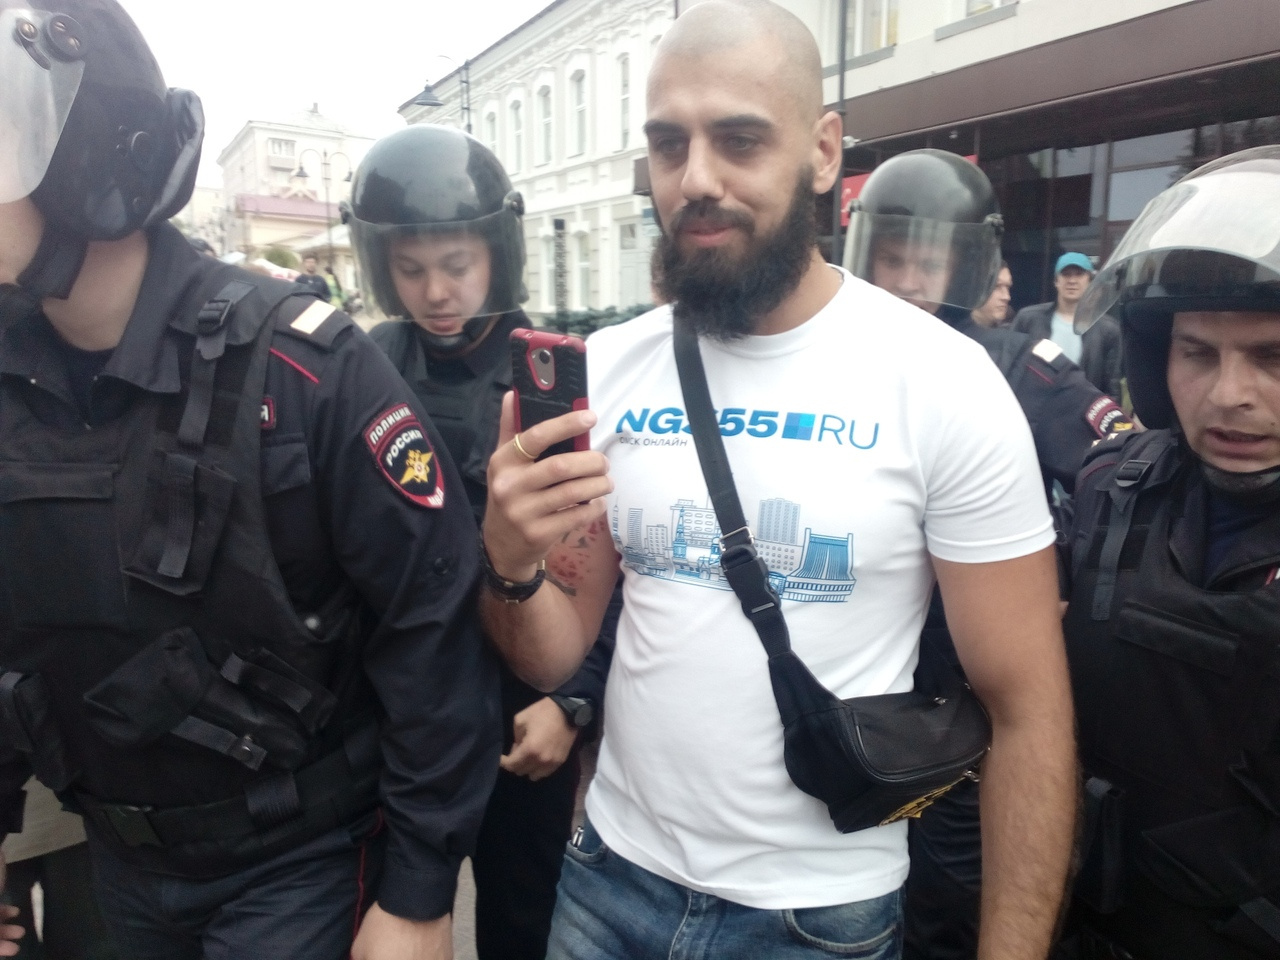 Нашего корреспондента Александра Зубова также задержали